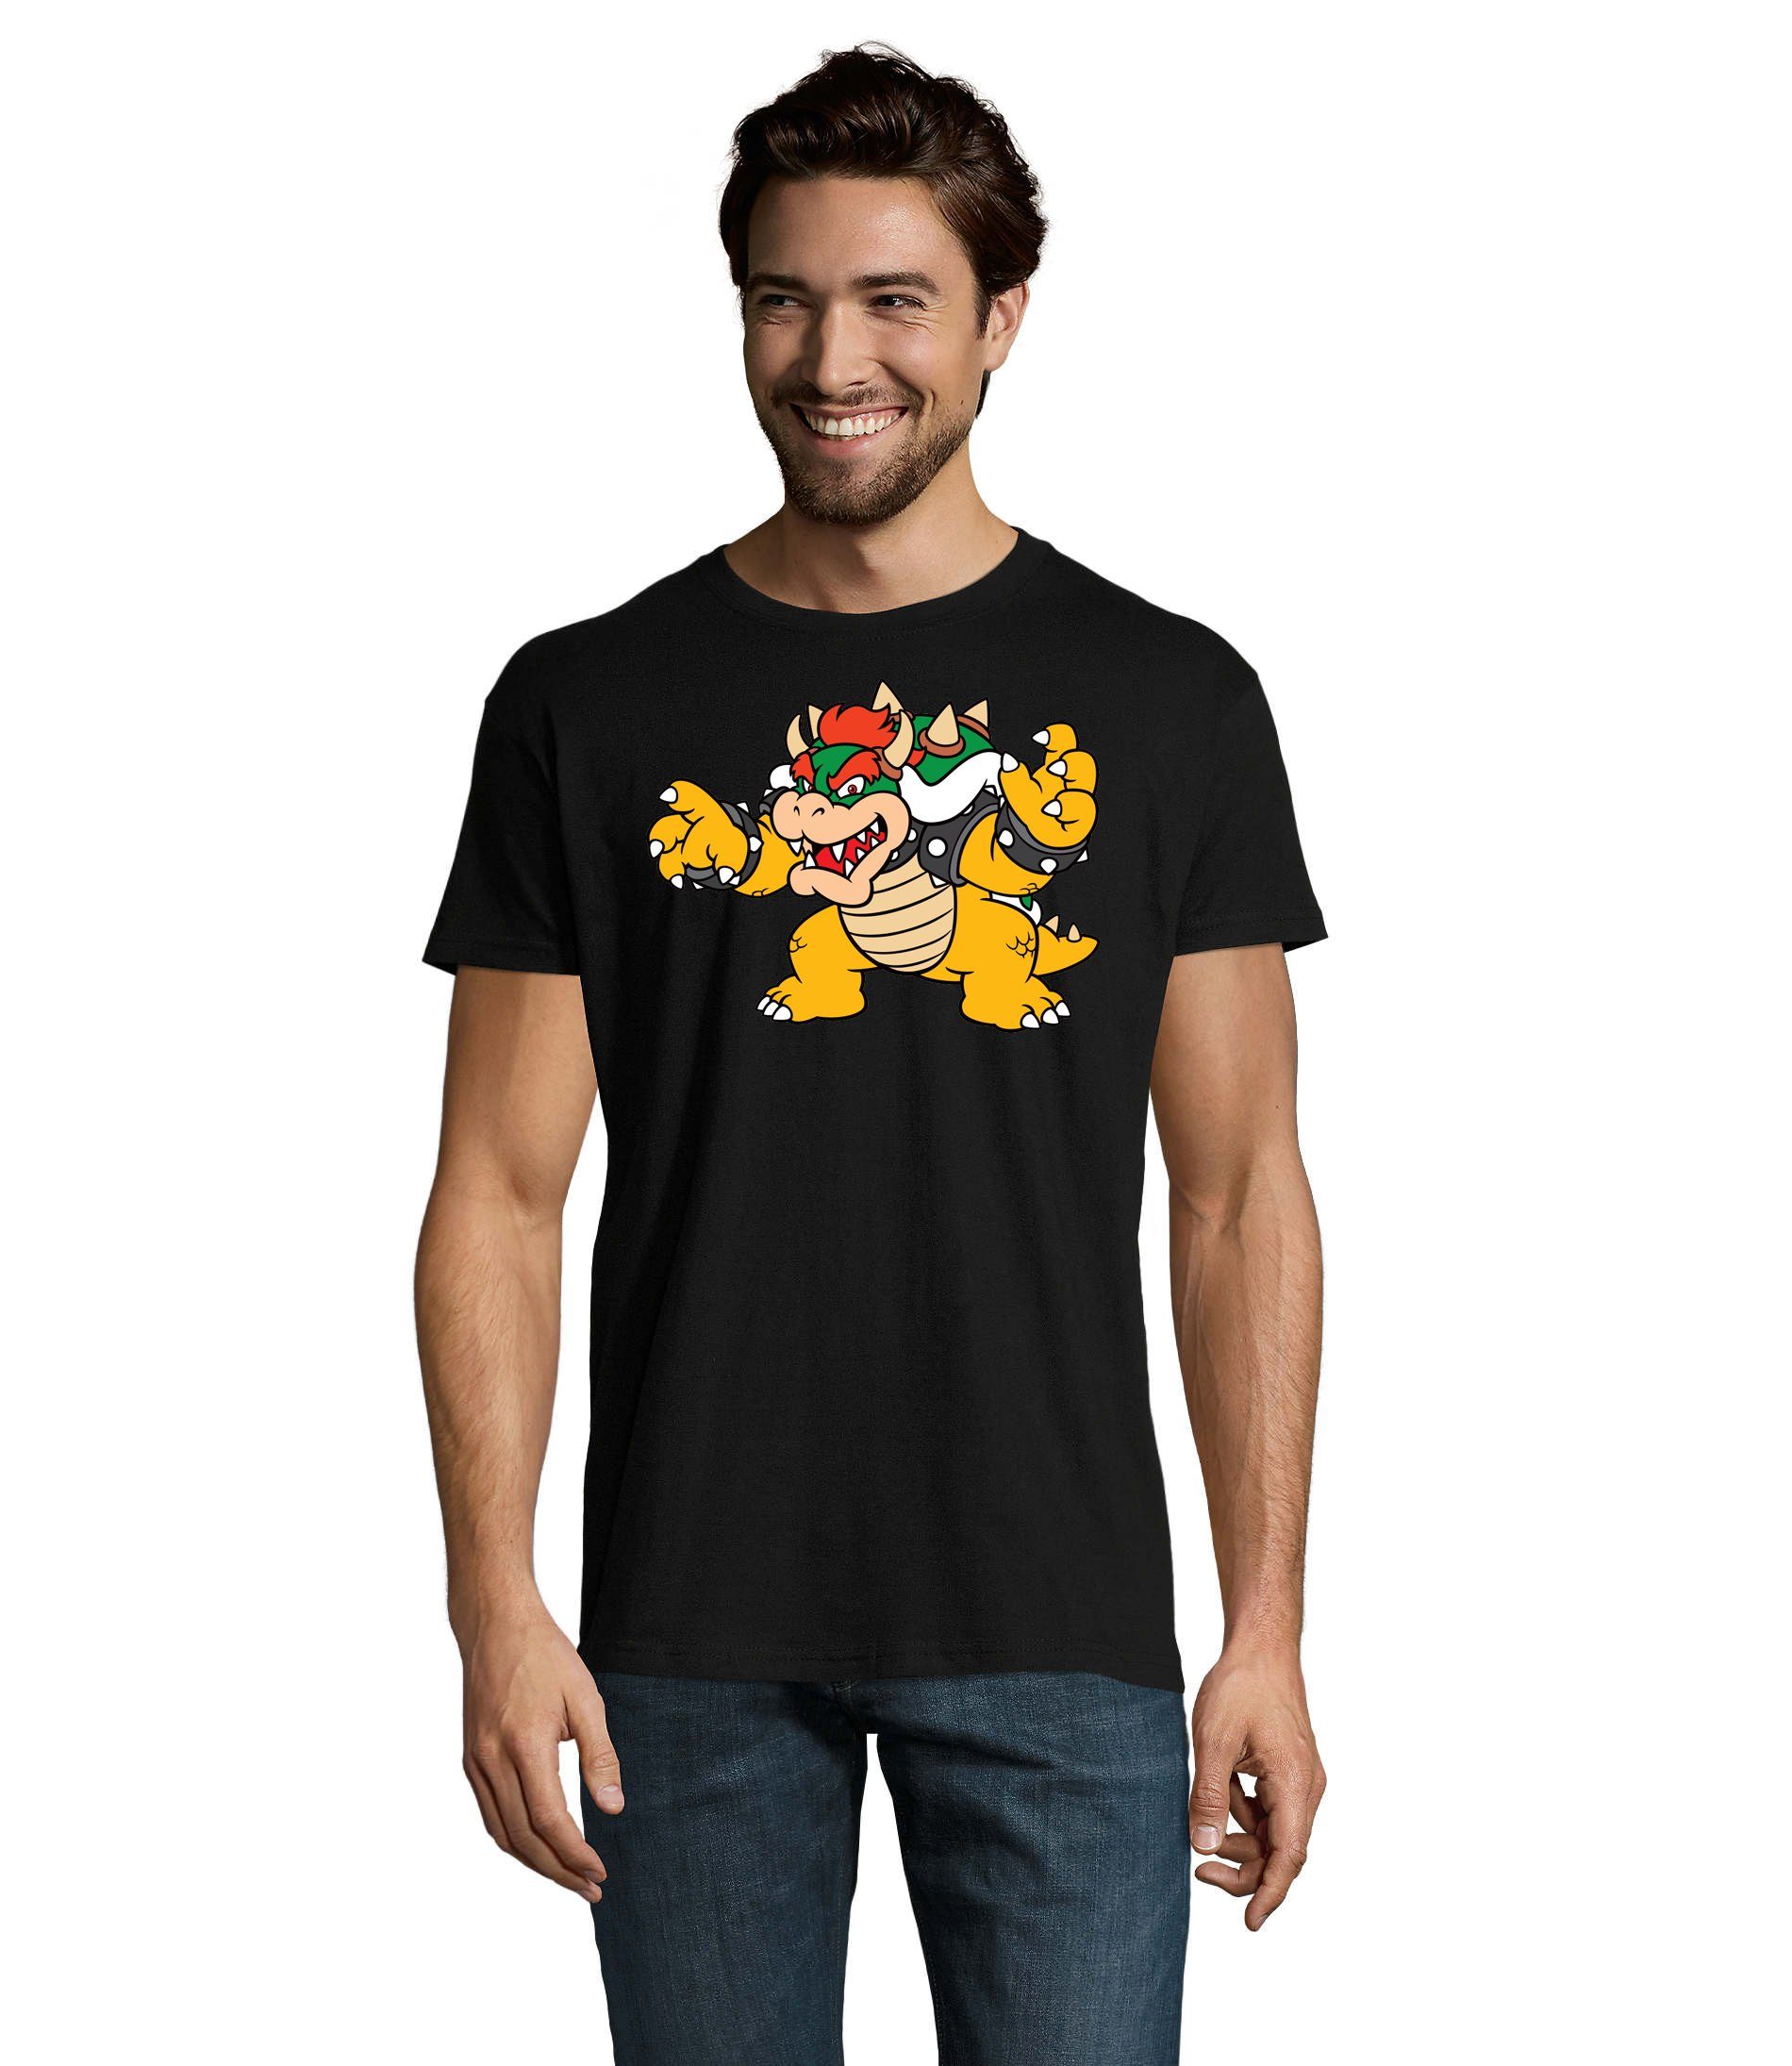 Gamer Game & Schwarz Mario Konsole Herren Blondie Nintendo T-Shirt Yoshi Brownie Luigi Gaming